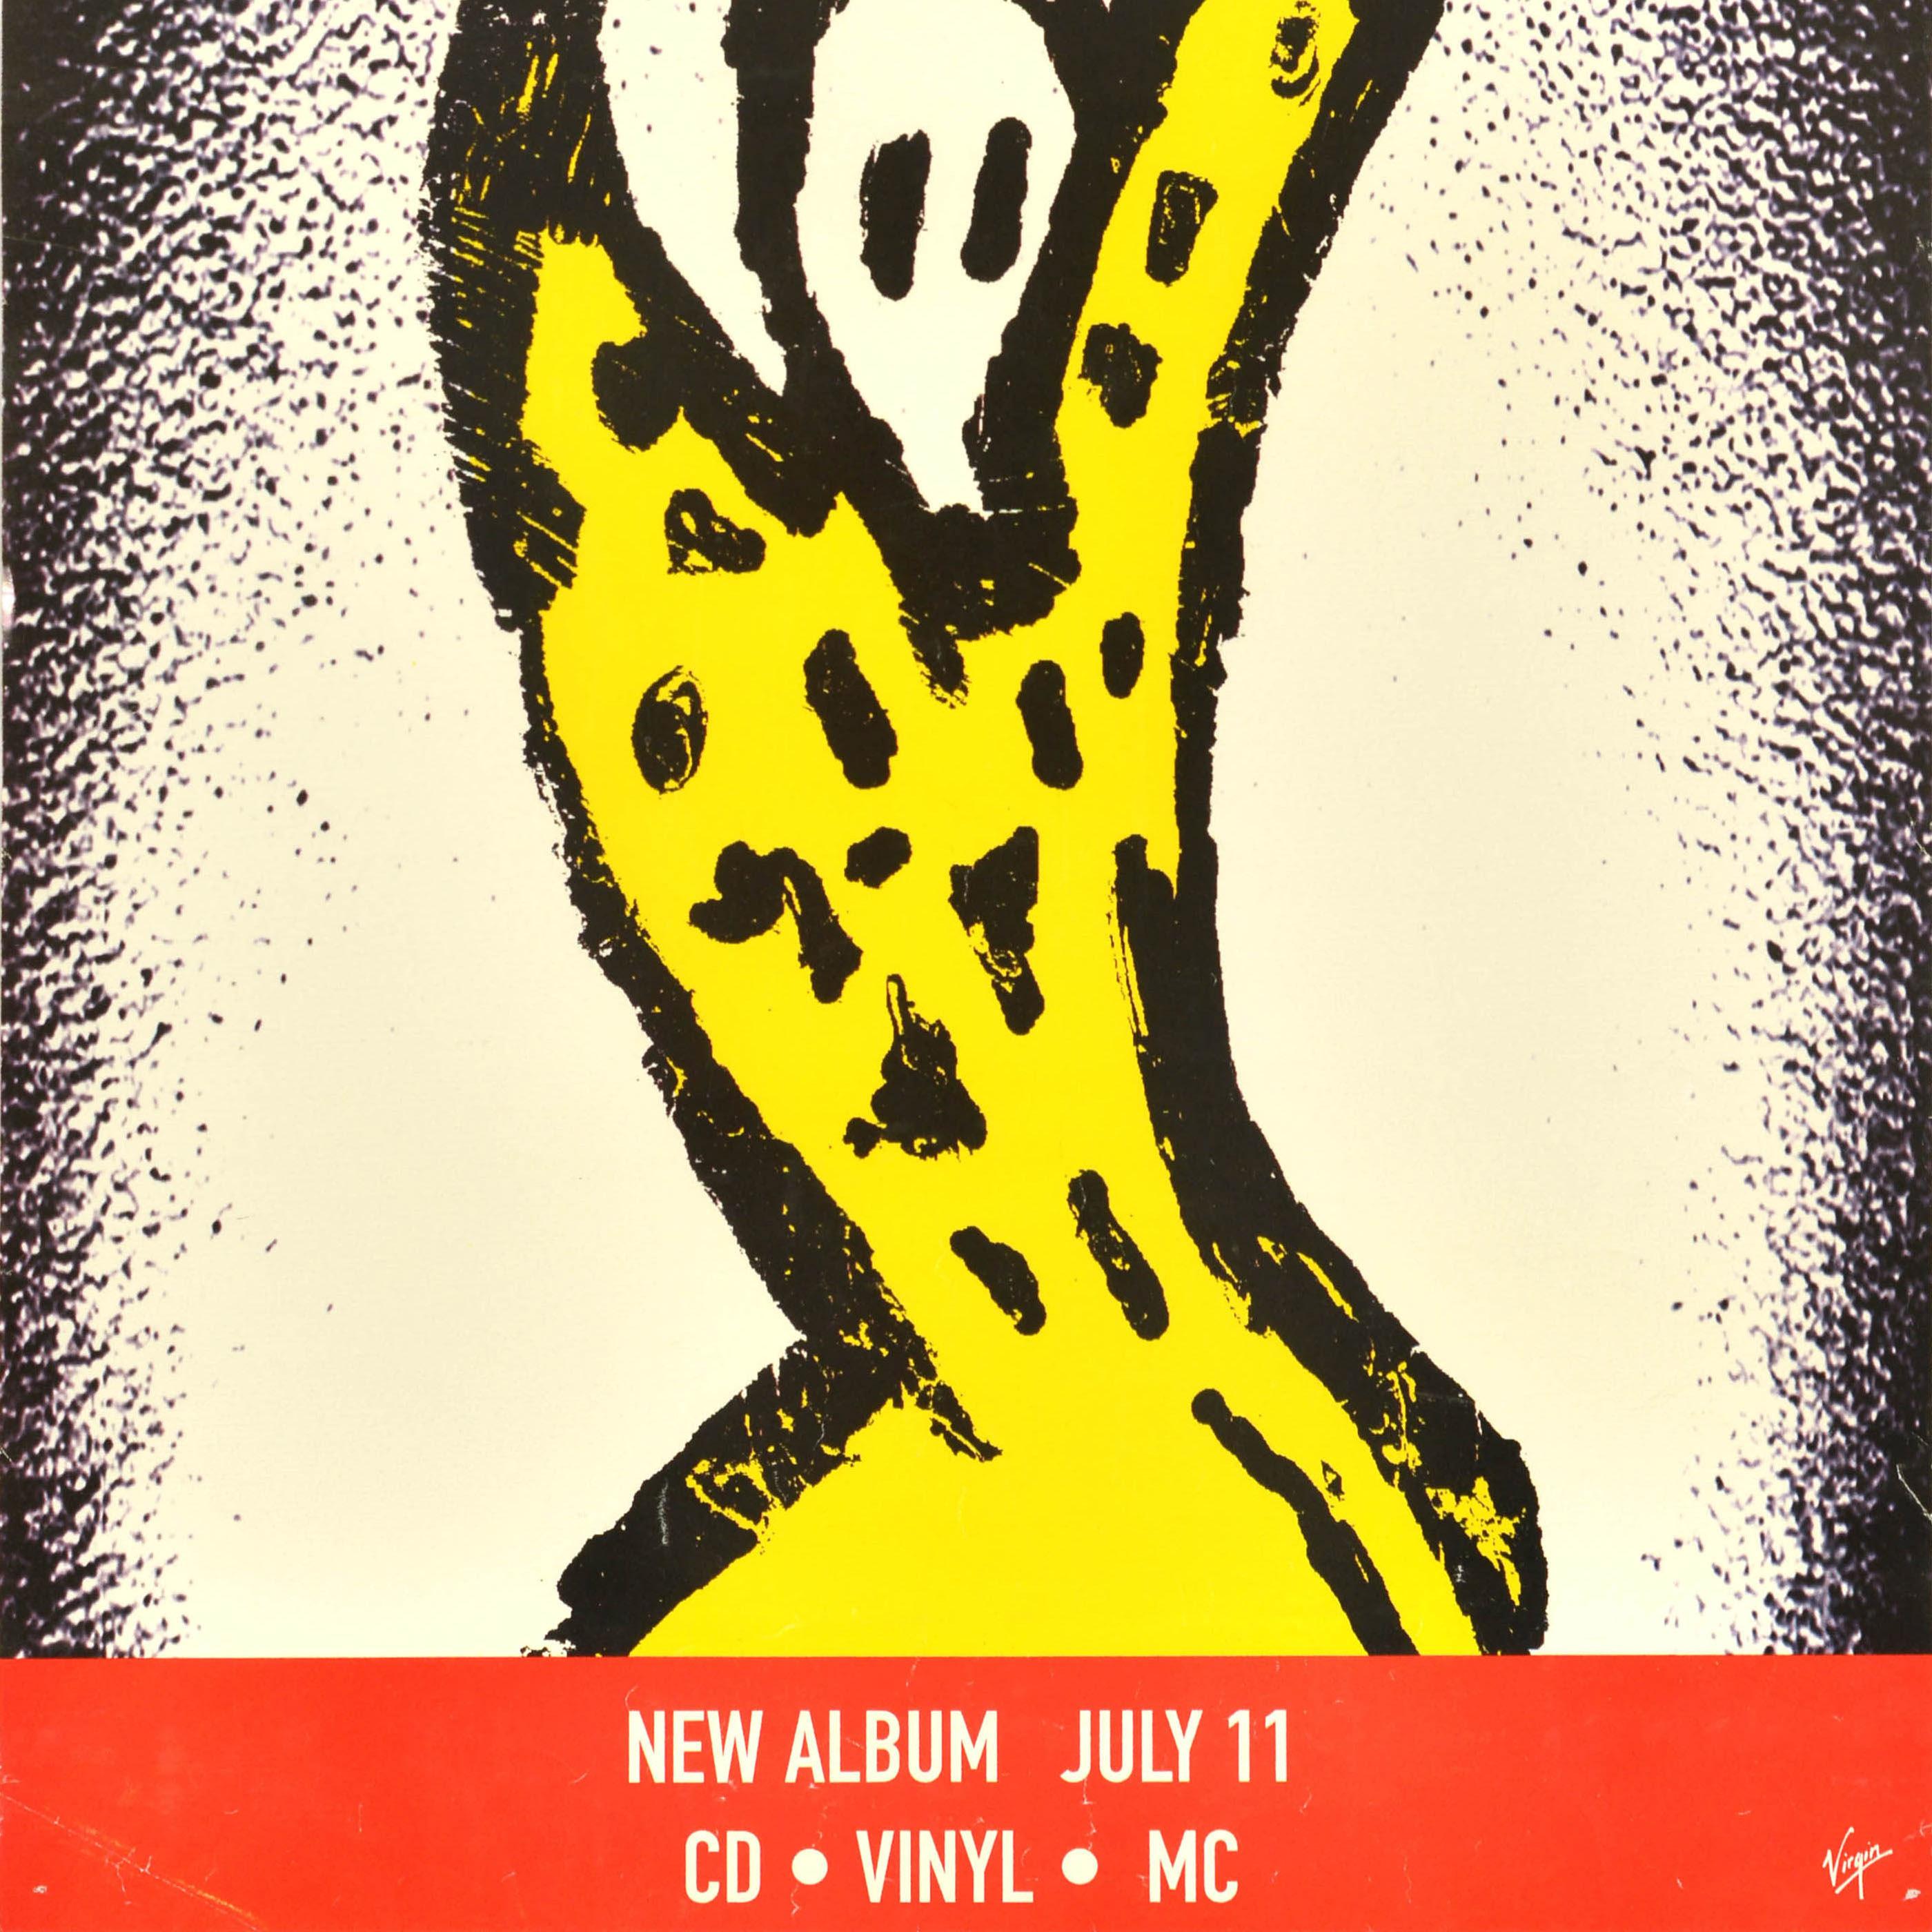 Original Vintage-Werbeplakat für das Album Voodoo Lounge der Rolling Stones mit einem Entwurf des Bandmitglieds Keith Richards, der eine Silhouette in Gelb und Schwarz mit dem Titeltext darüber und Informationen über das Erscheinungsdatum des neuen